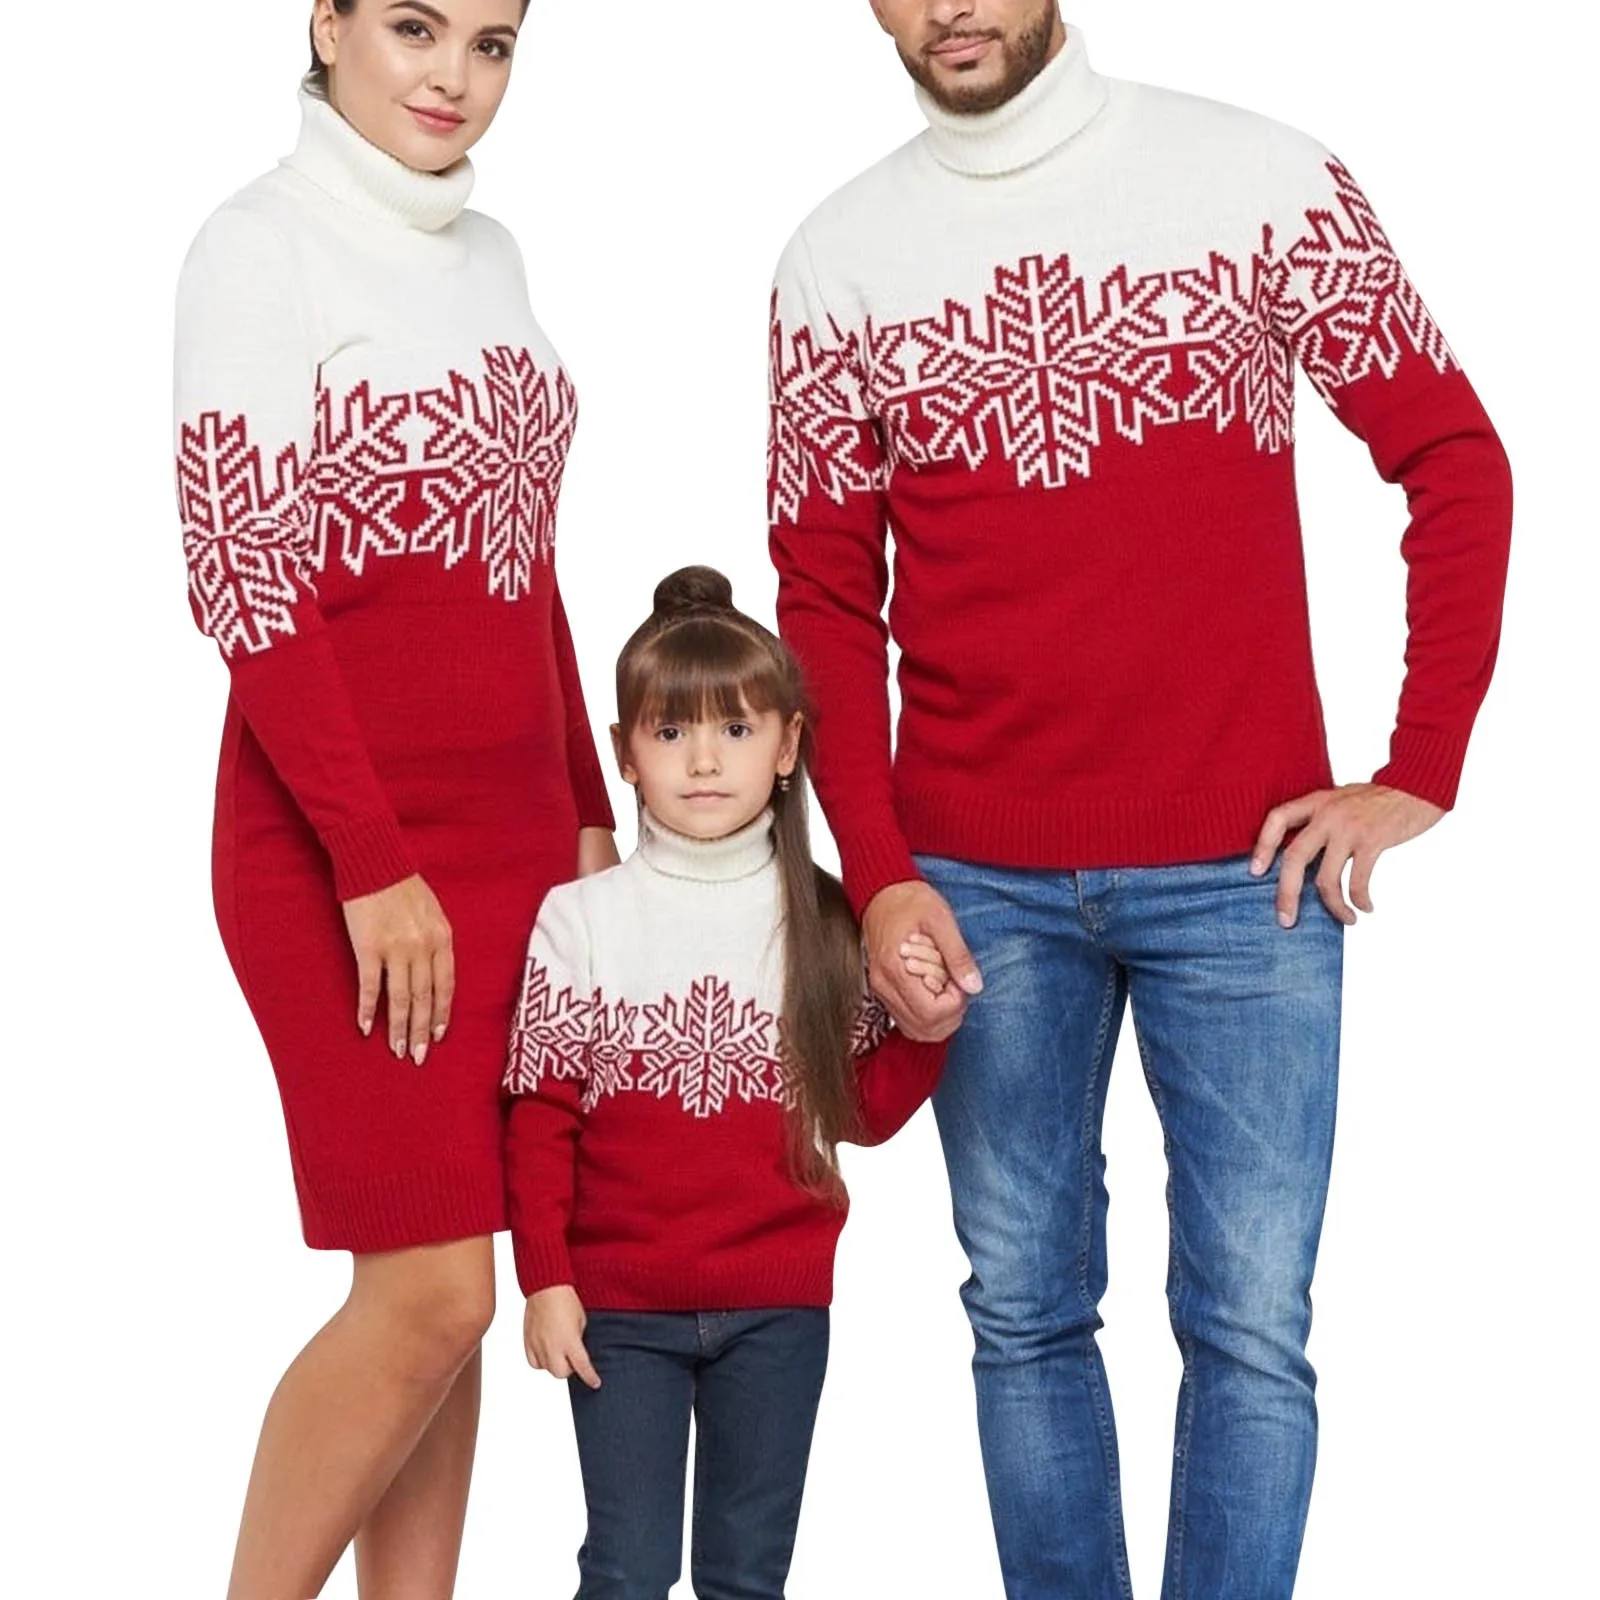 Новогодние свитера для всей семьи в одном стиле